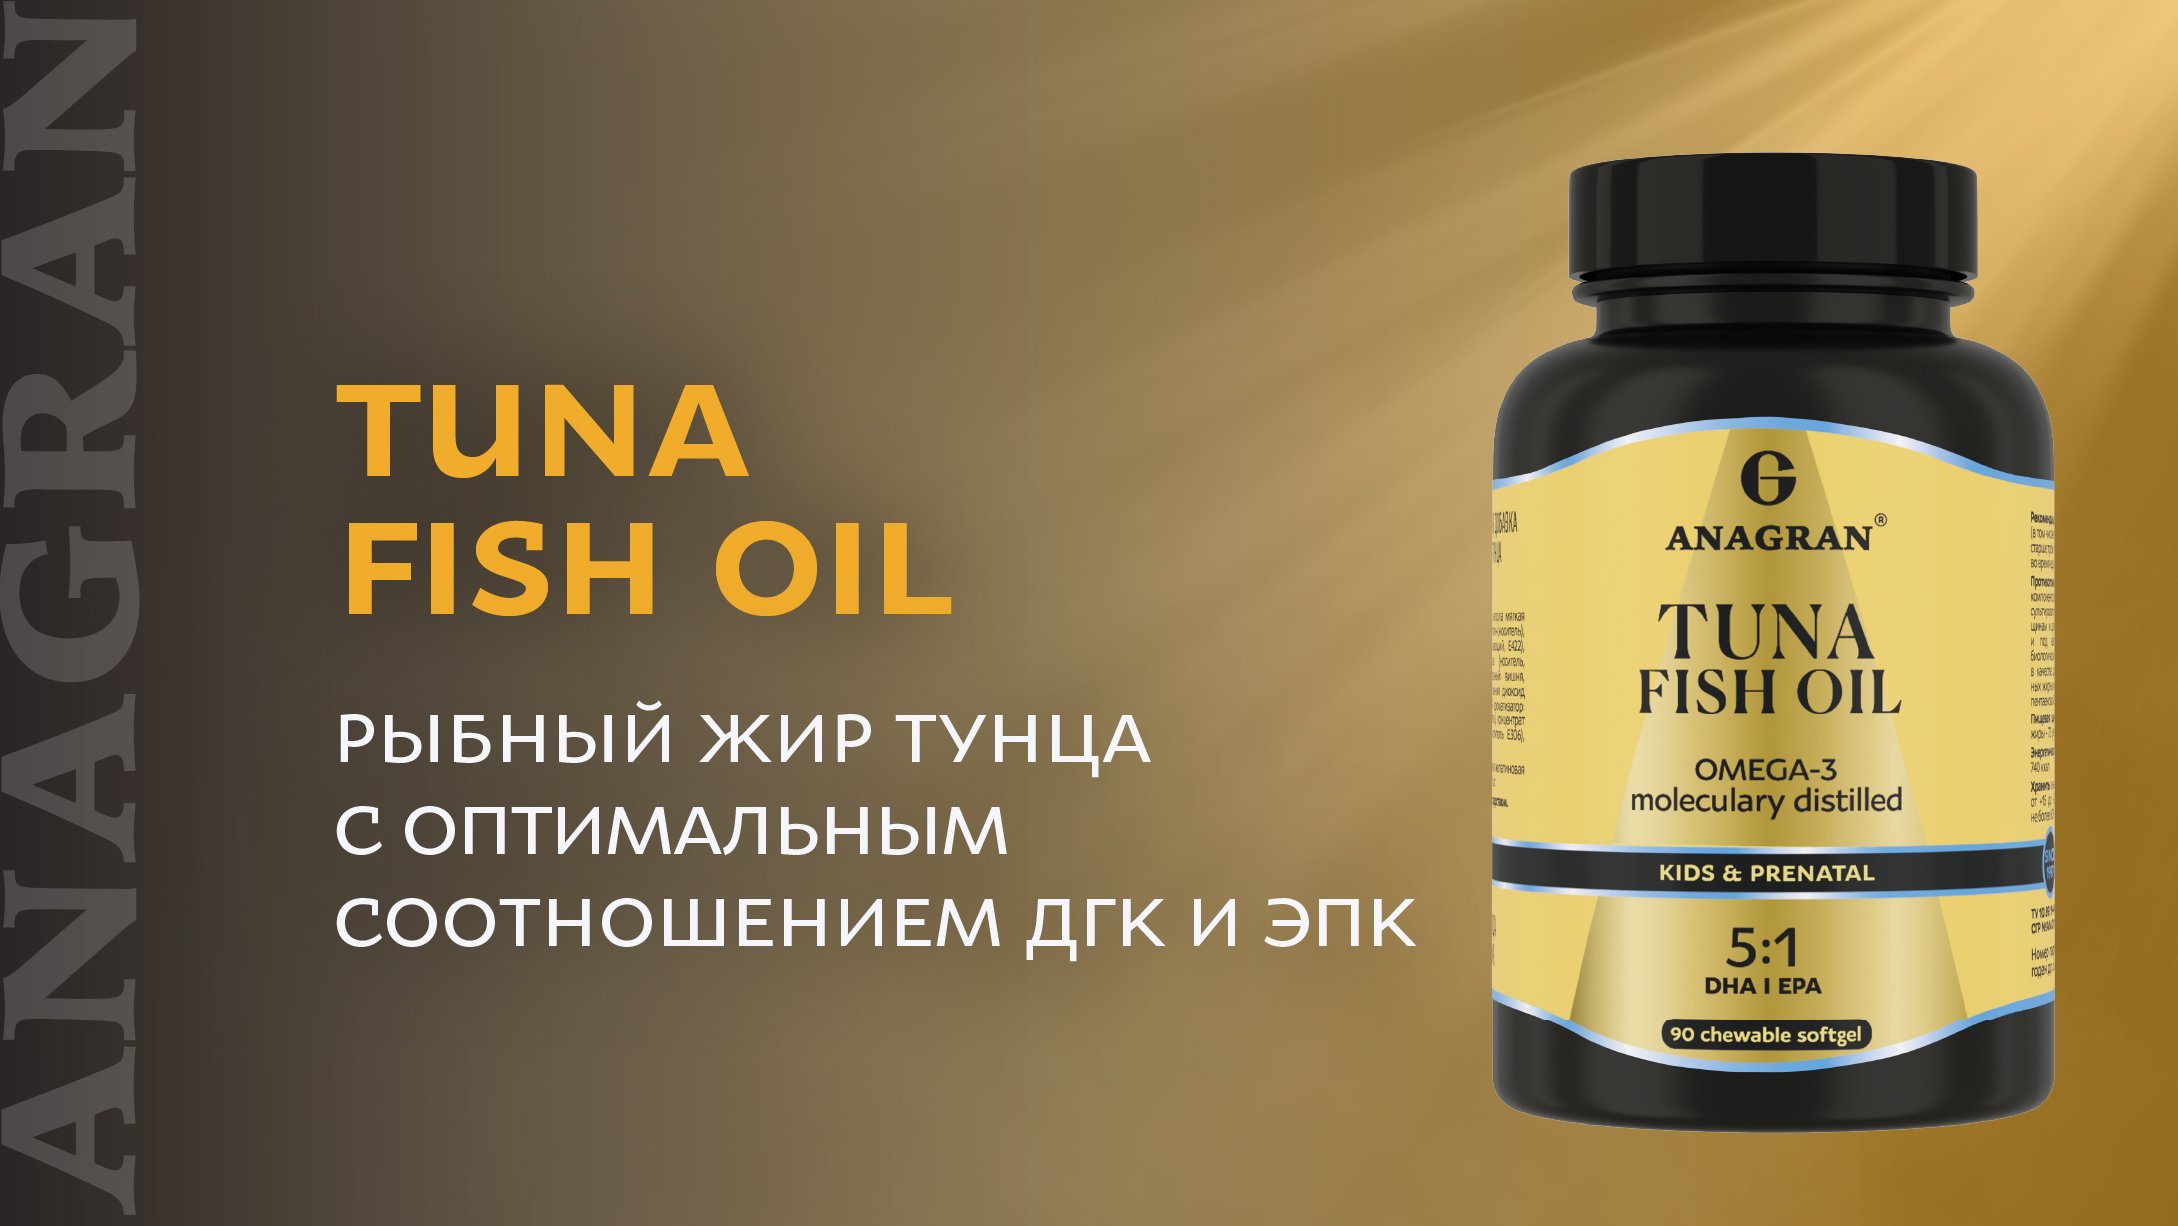 Tuna fish oil – рыбный жир тунца с оптимальным соотношением ДГК и ЭПК